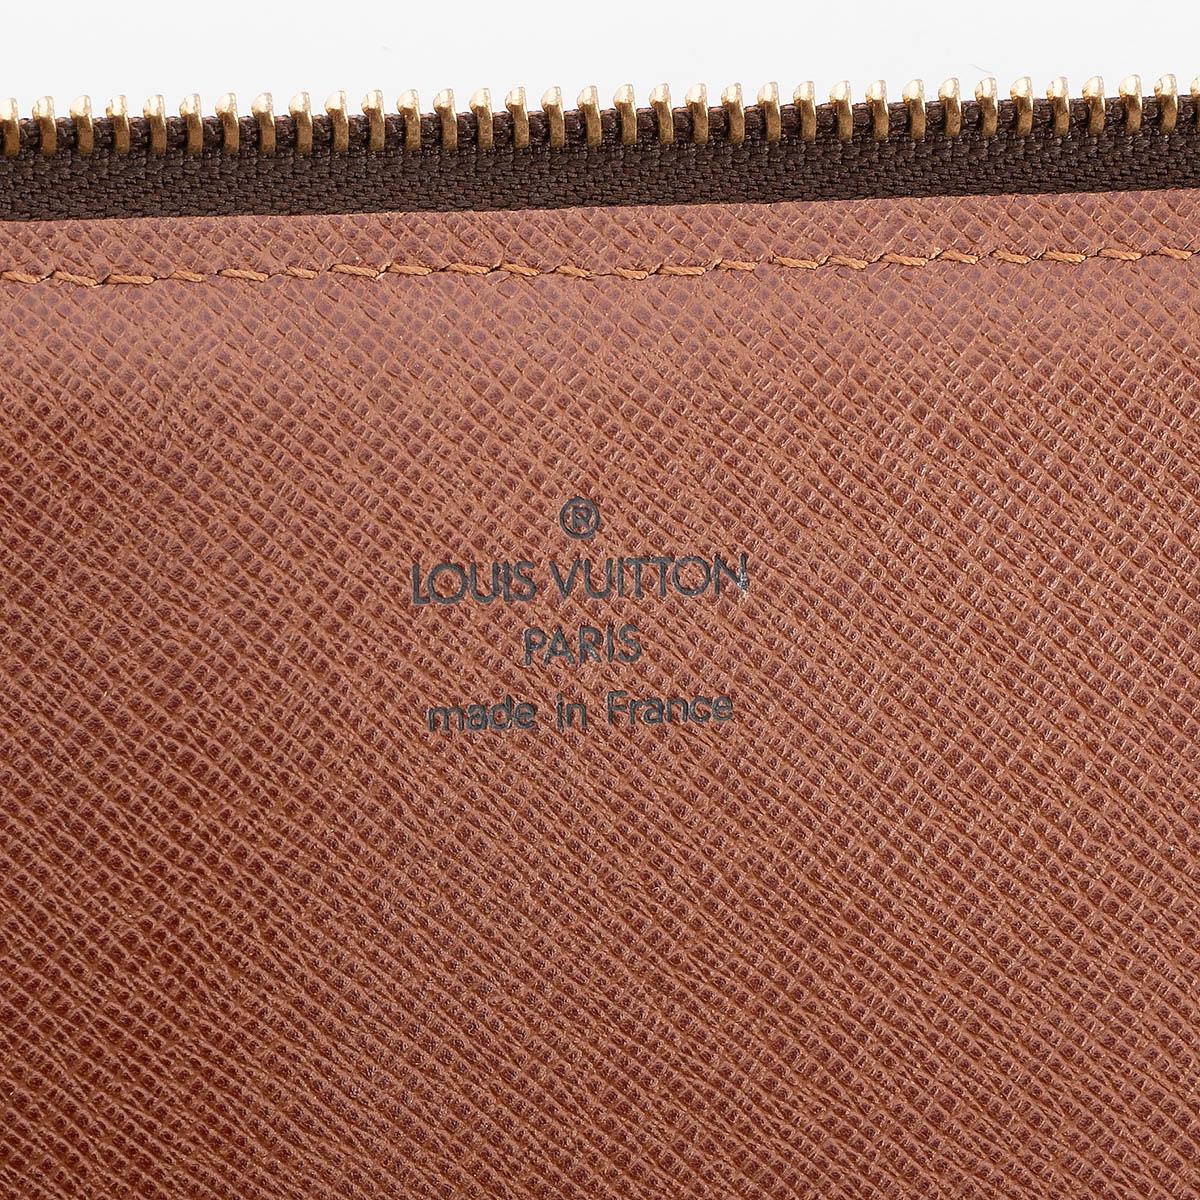 LOUIS VUITTON brown Monogram canvas POCHE DOCUMENTS Portfolio Case Bag For Sale 3